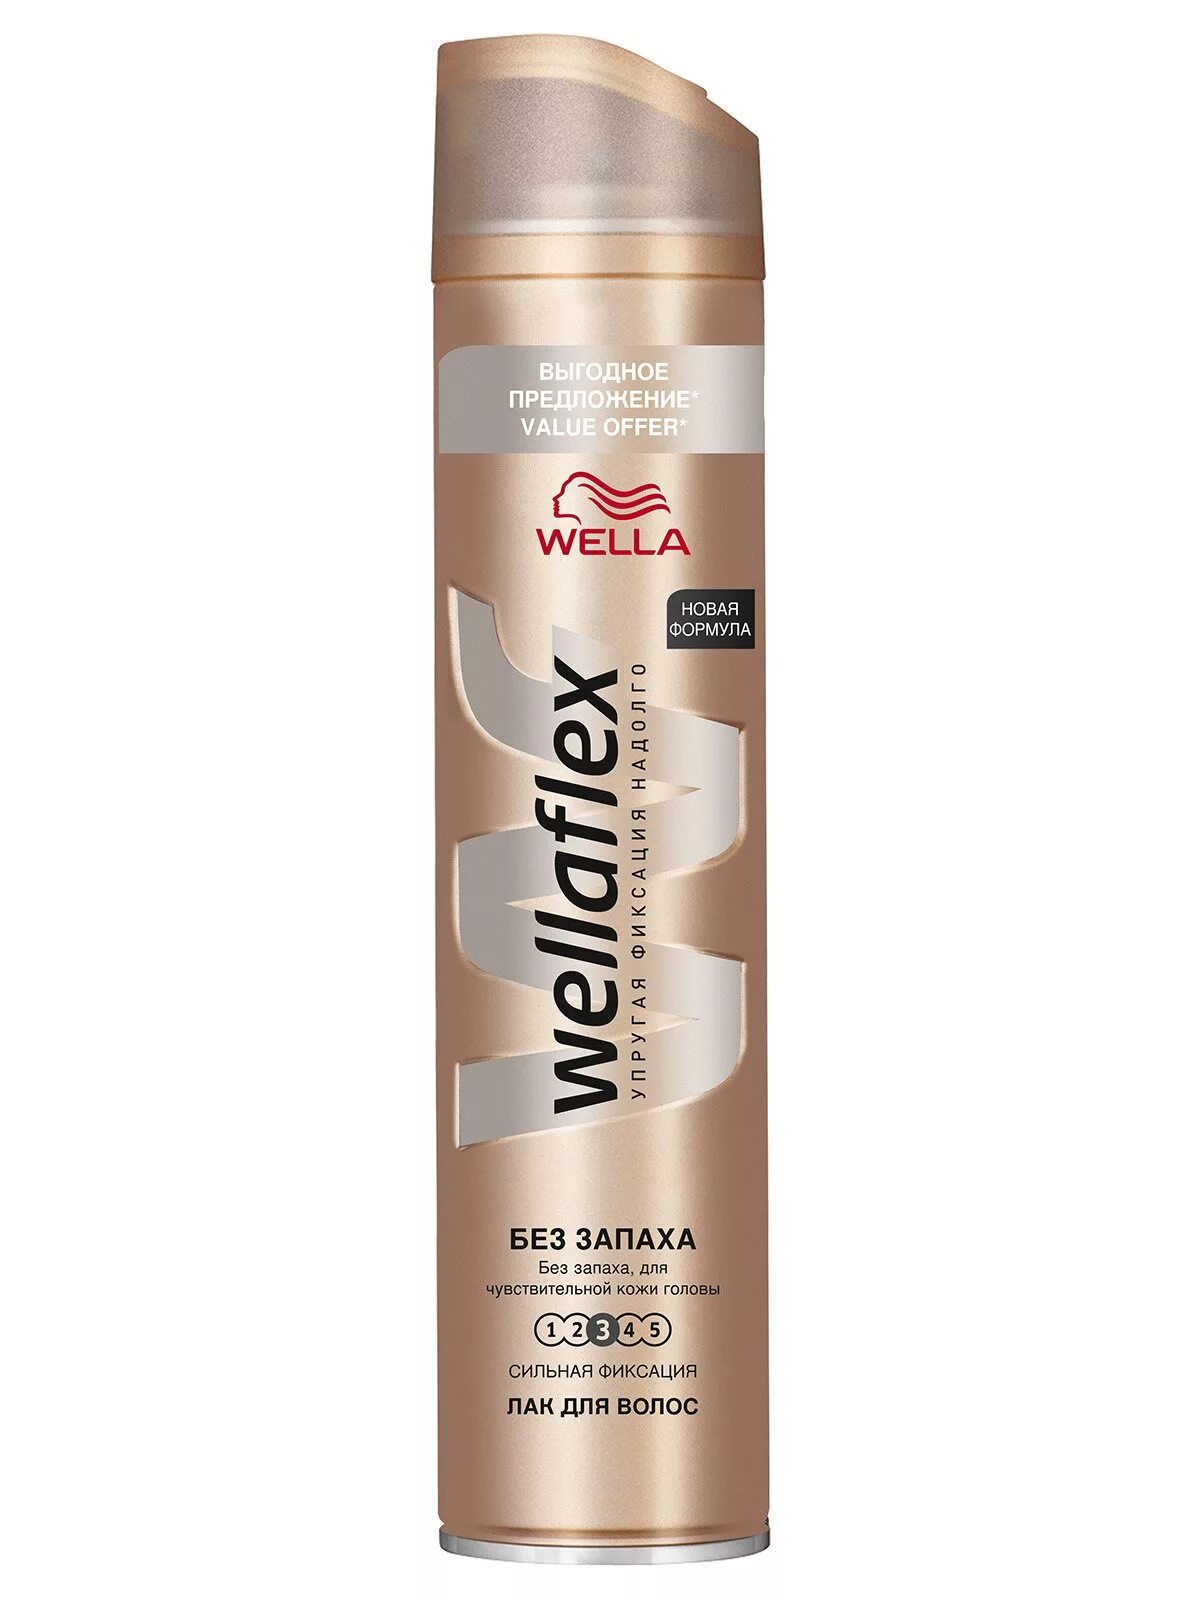 Лак без запаха купить. Wella лак для волос Wellaflex. Лак для волос Wellaflex без запаха. Wella лак сильной фиксации.